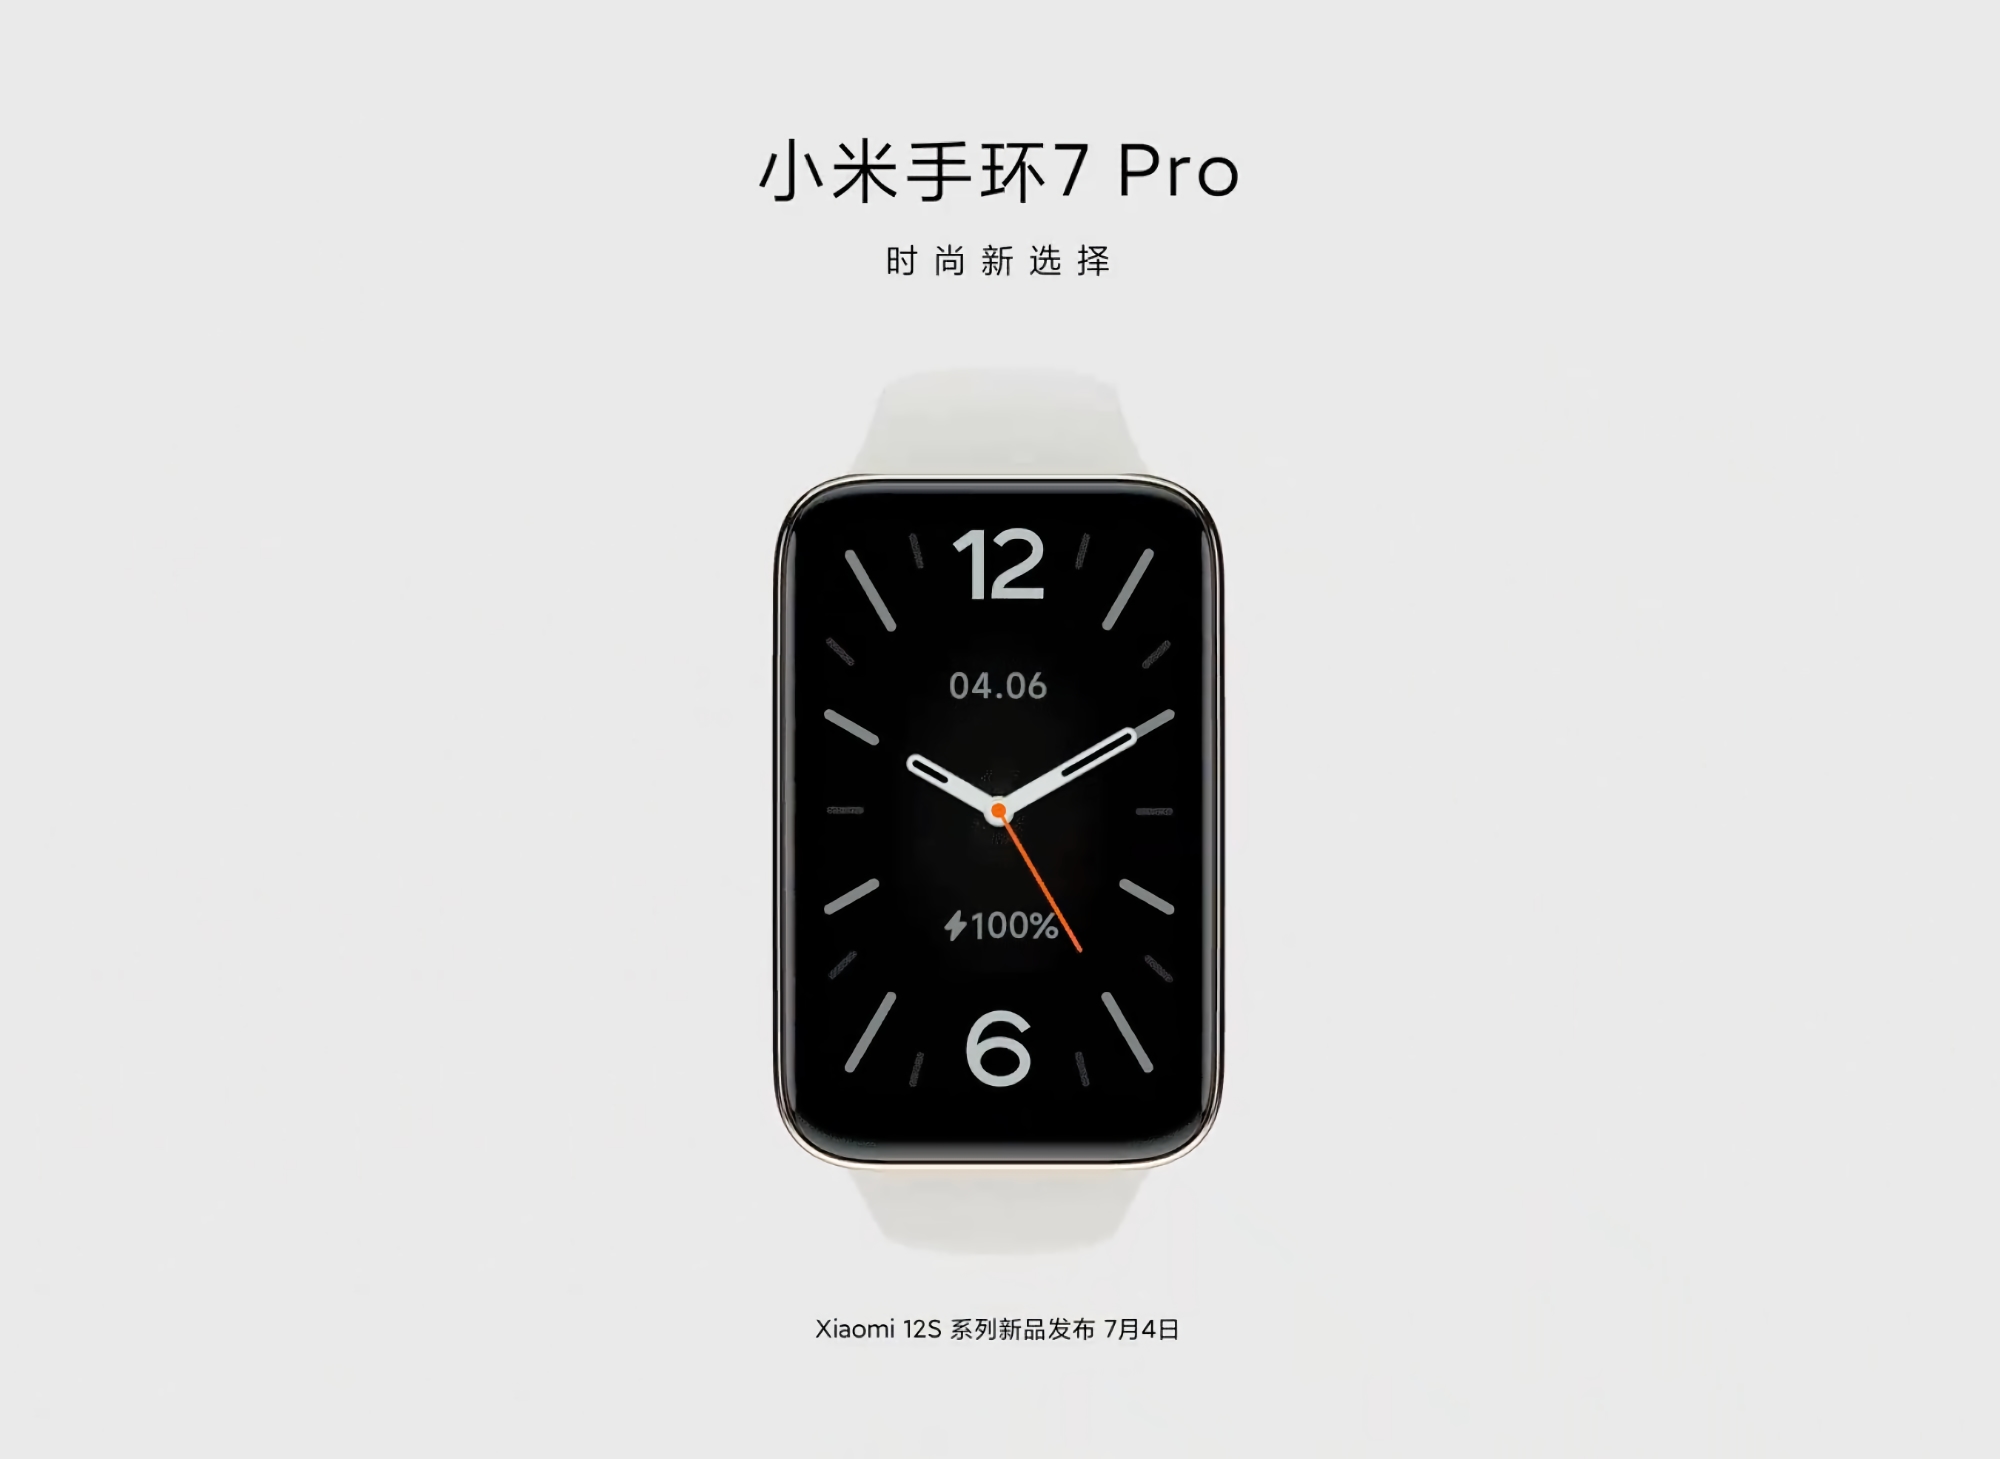 Oficjalnie: Xiaomi Mi Band 7 Pro zostanie zaprezentowany wraz z linią smartfonów Xiaomi 12S 4 lipca